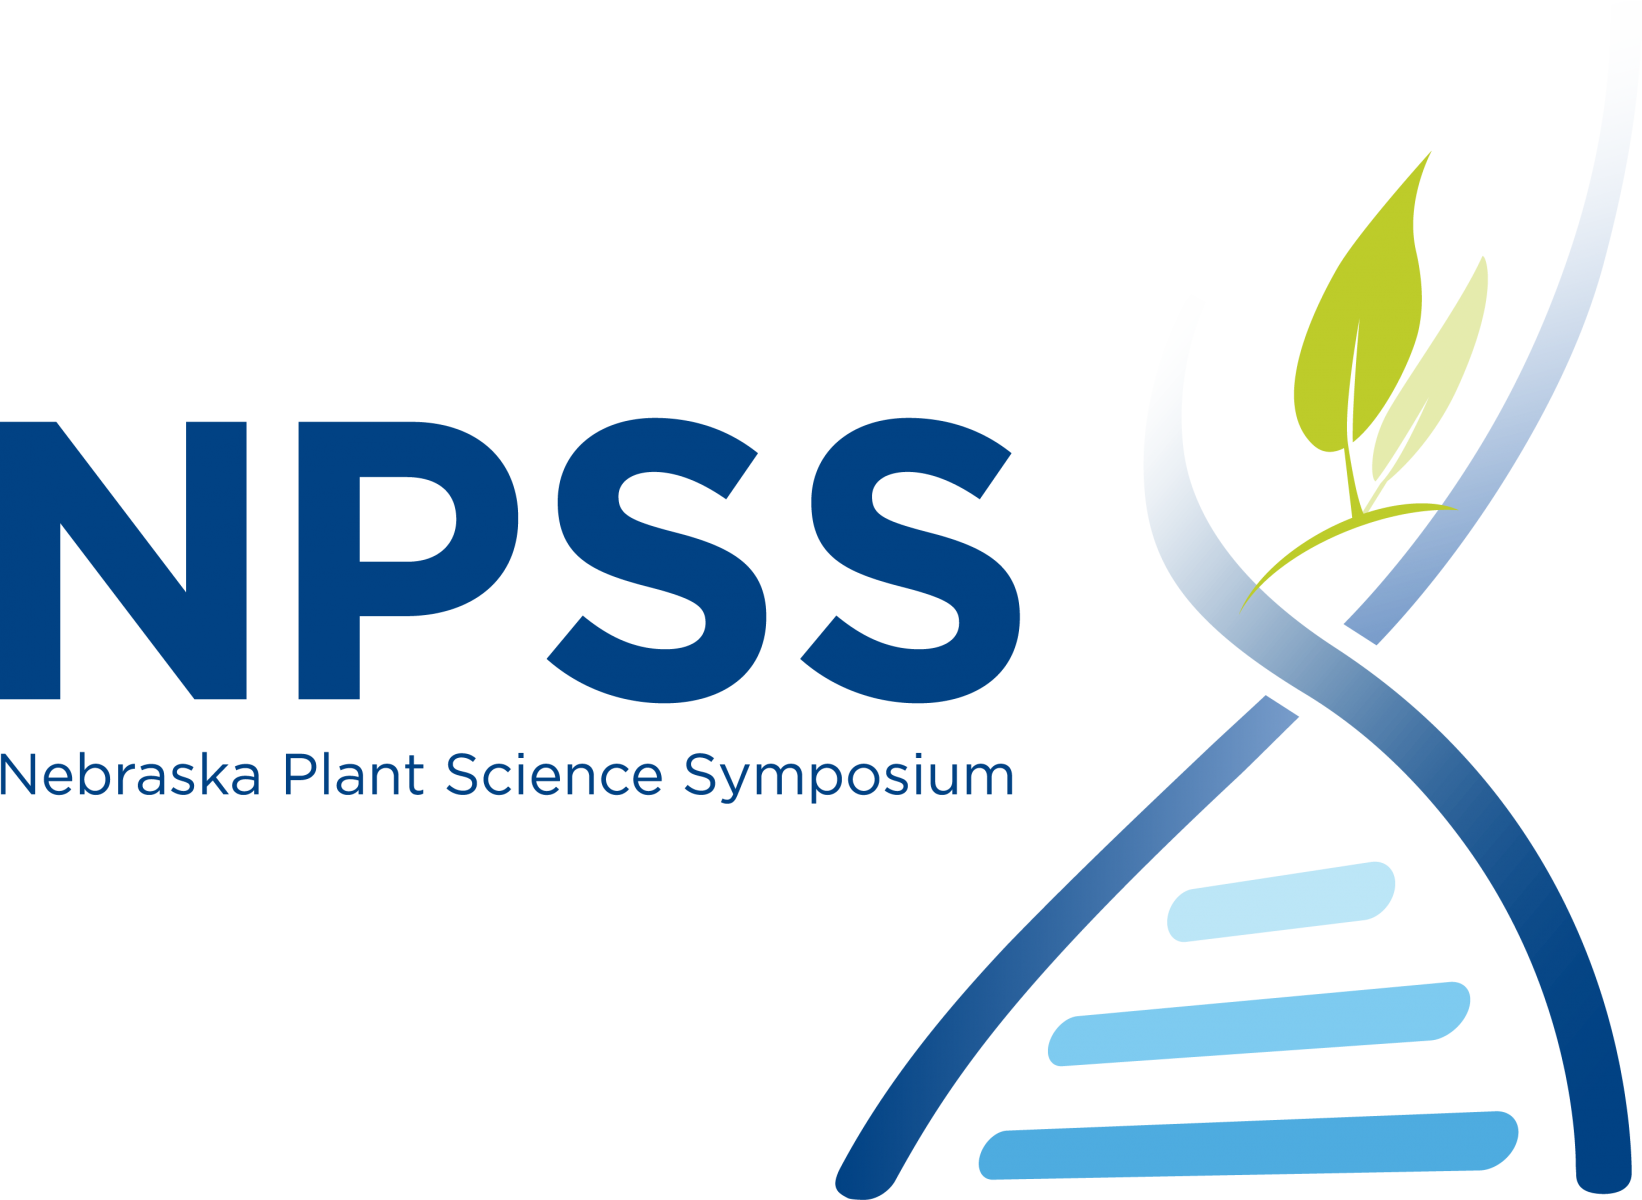 Nebraska Plant Science Symposium logo